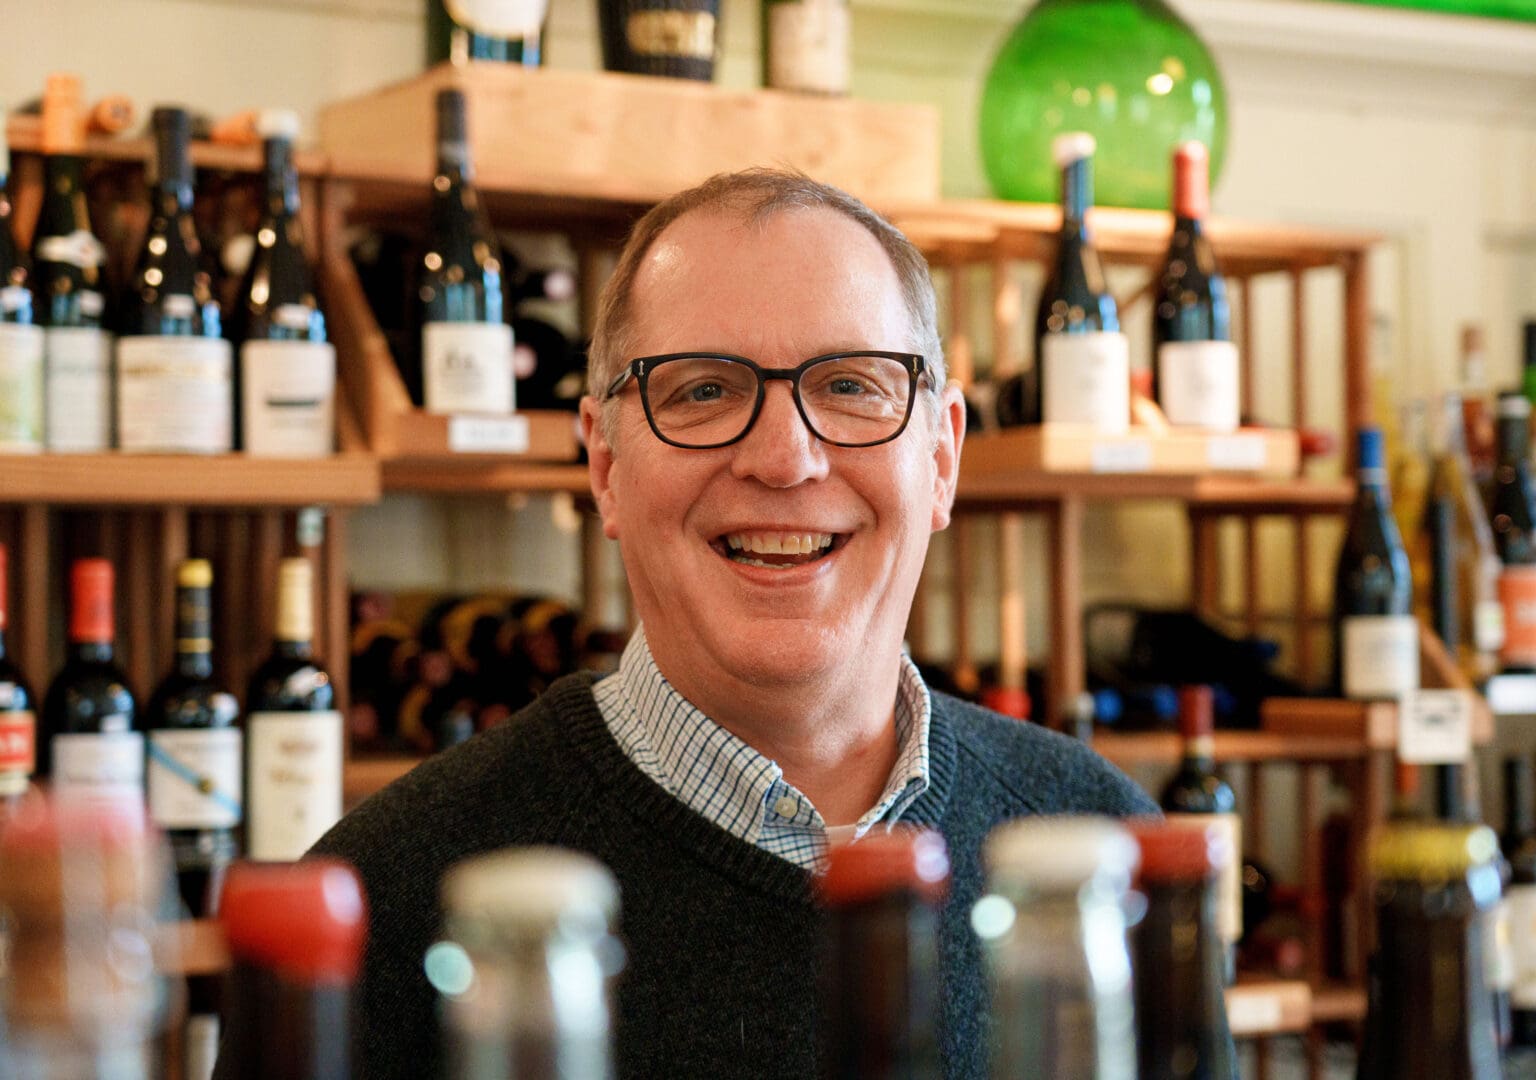 Ted Seifert, owner of Seifert & Jones Wine Merchants smiles for the camera behind bottles of wine.